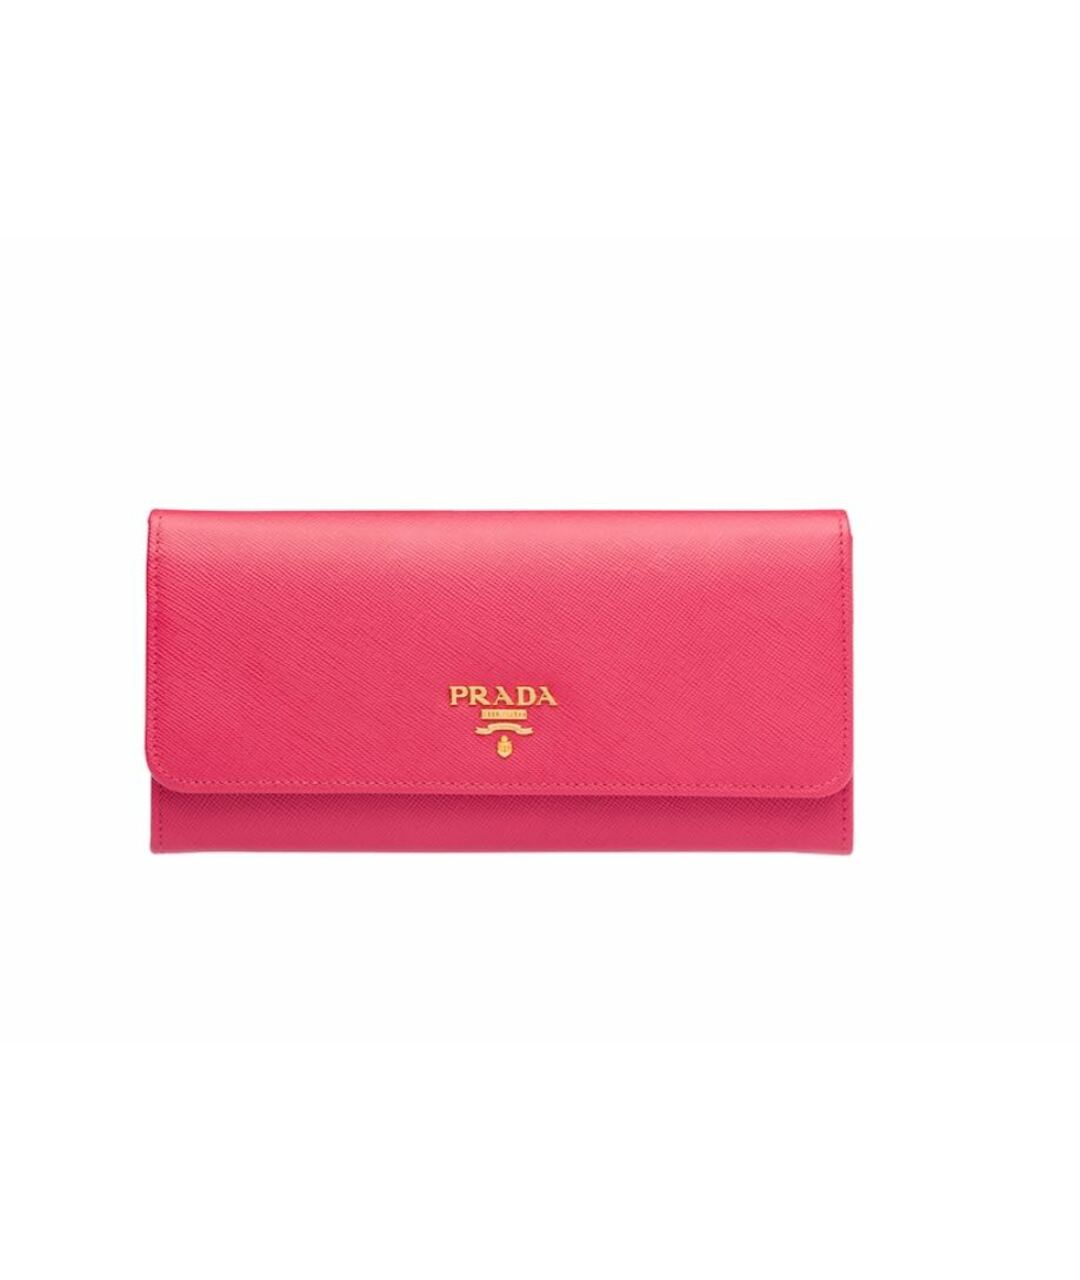 PRADA Розовый кожаный кошелек, фото 1